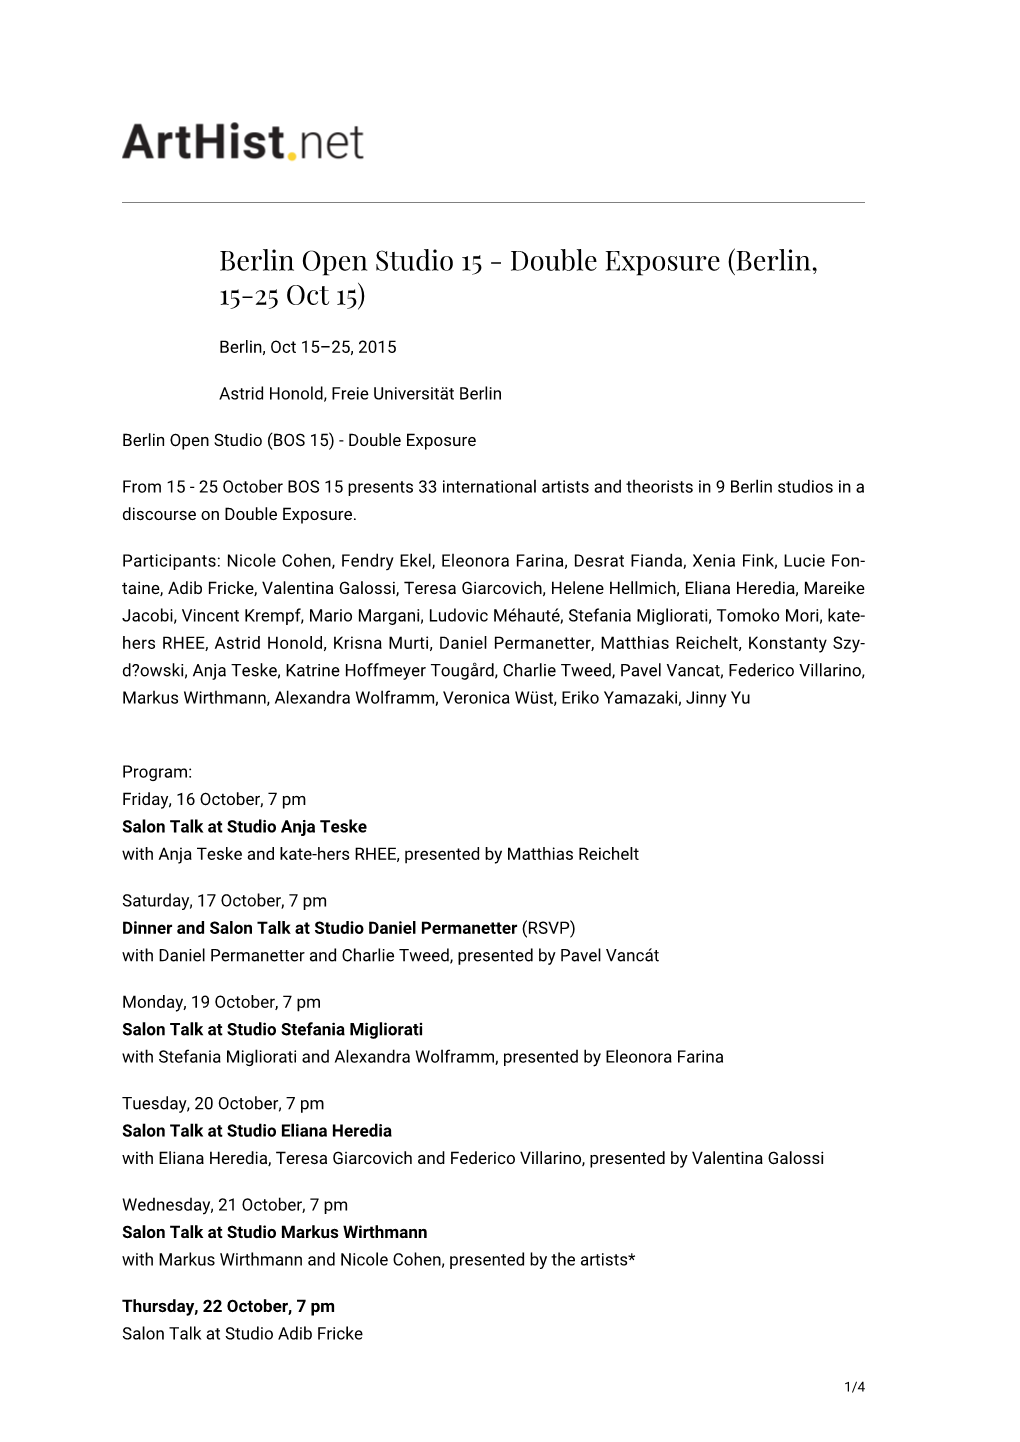 Berlin Open Studio 15 - Double Exposure (Berlin, 15-25 Oct 15)